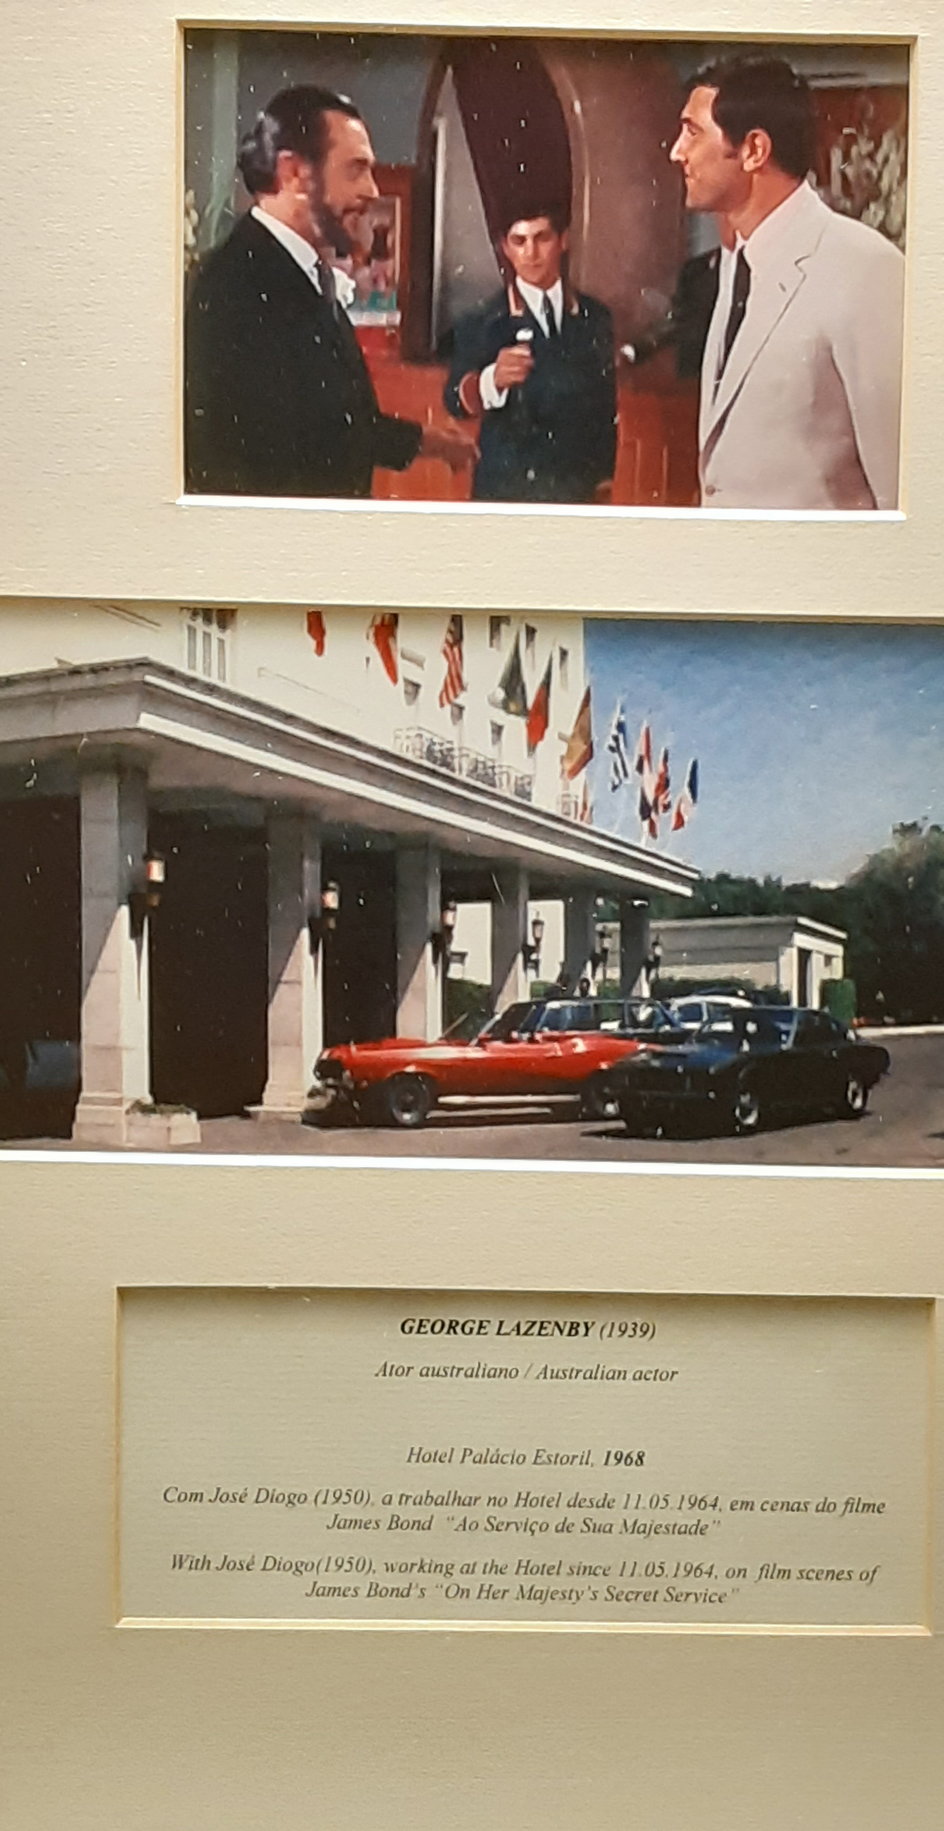 Tablica poświęcona kręceniu w hotelu Palacio filmu z Jamesem Bondem "W tajnej służbie Jej Królewskiej Mości"